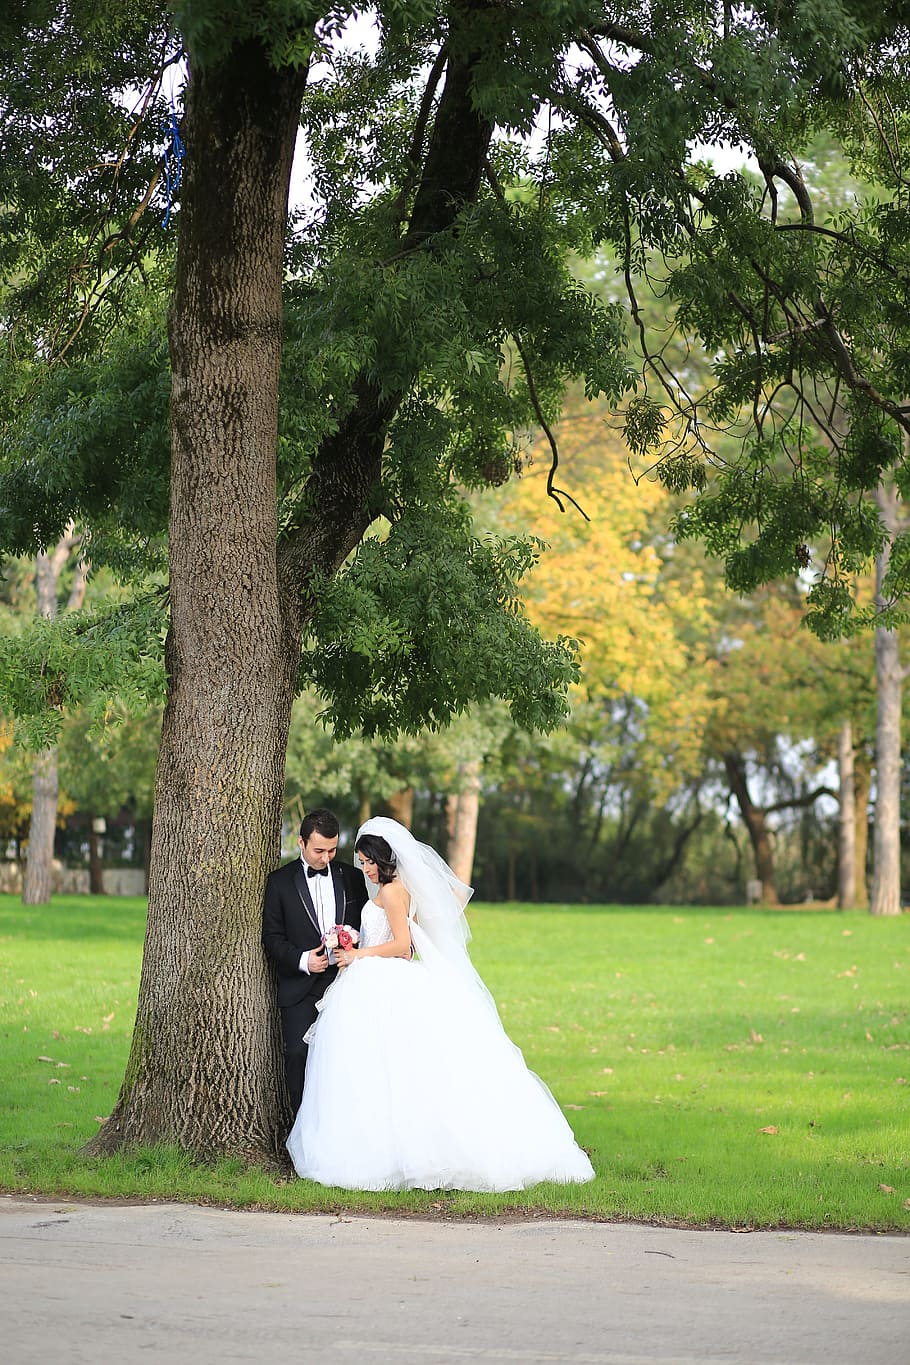 naturaleza, nueva pareja, fotografía al aire libre, fotografía de bodas, boda, novia, recién casado, planta, árbol, vestido de novia